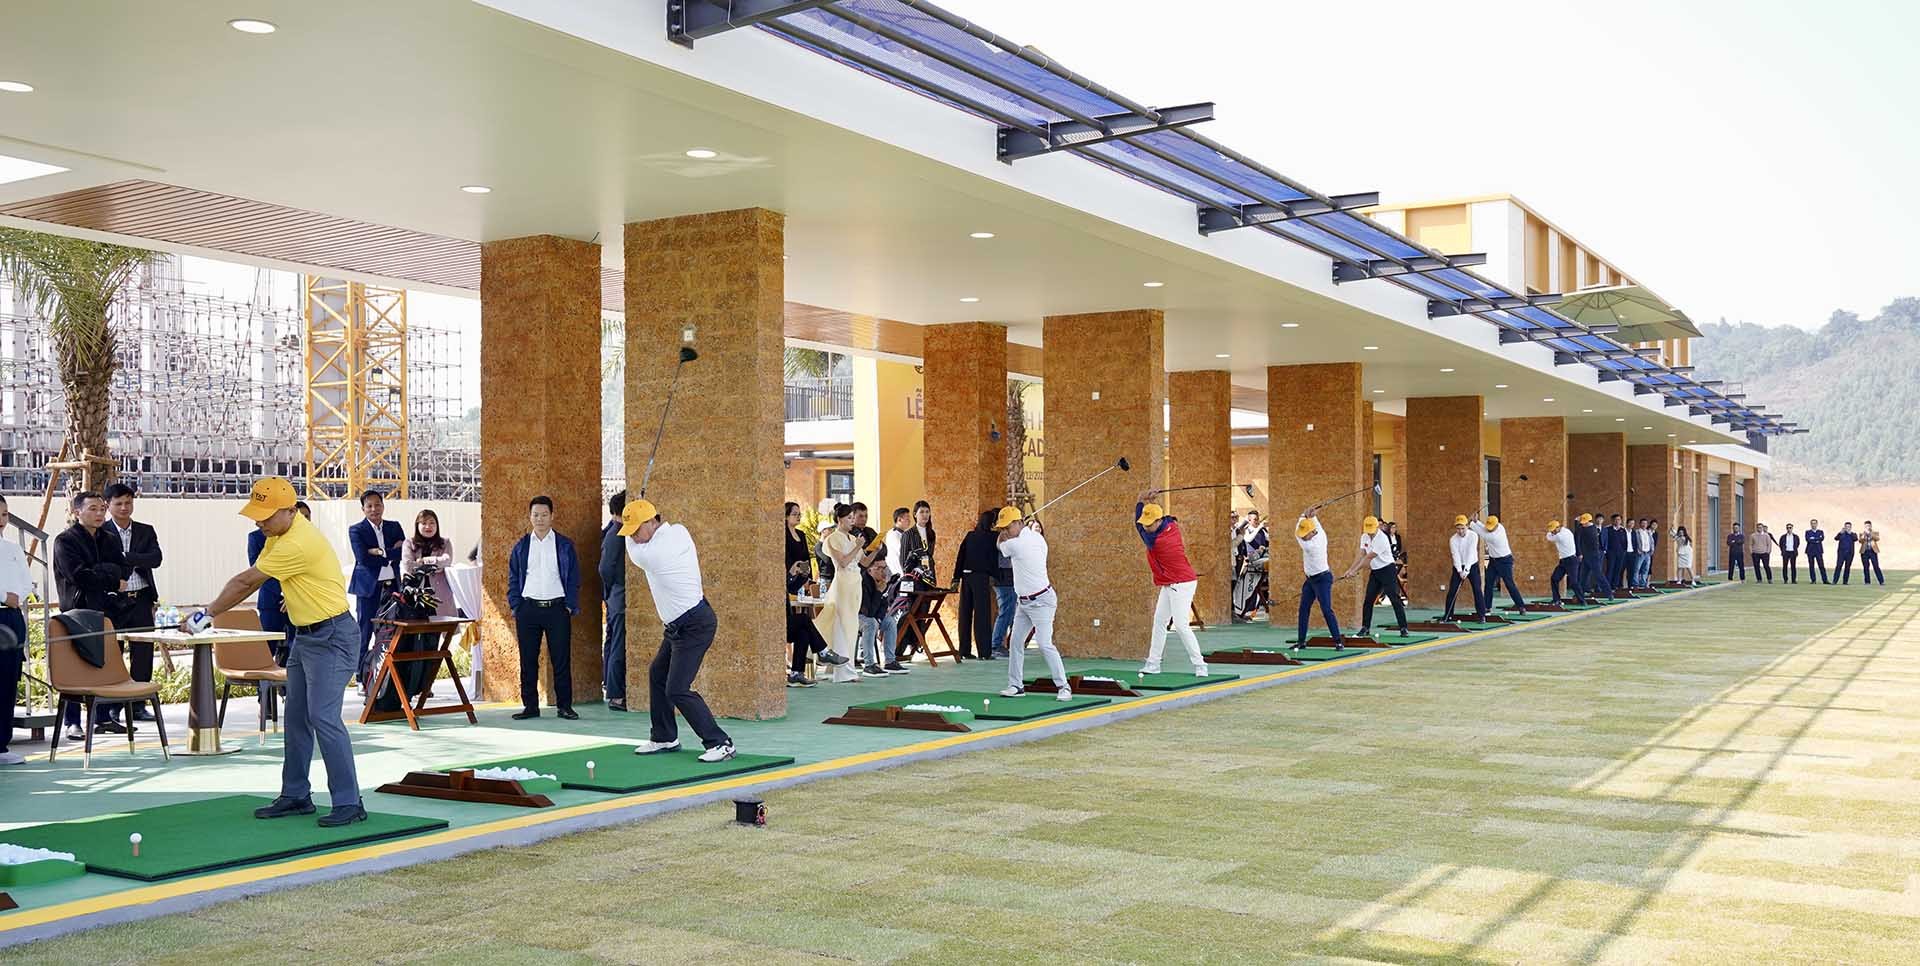 Các đại biểu, khách mời phát bóng ghi dấu ấn nhân sự kiện khánh thành Học viện T&T Golf Academy.